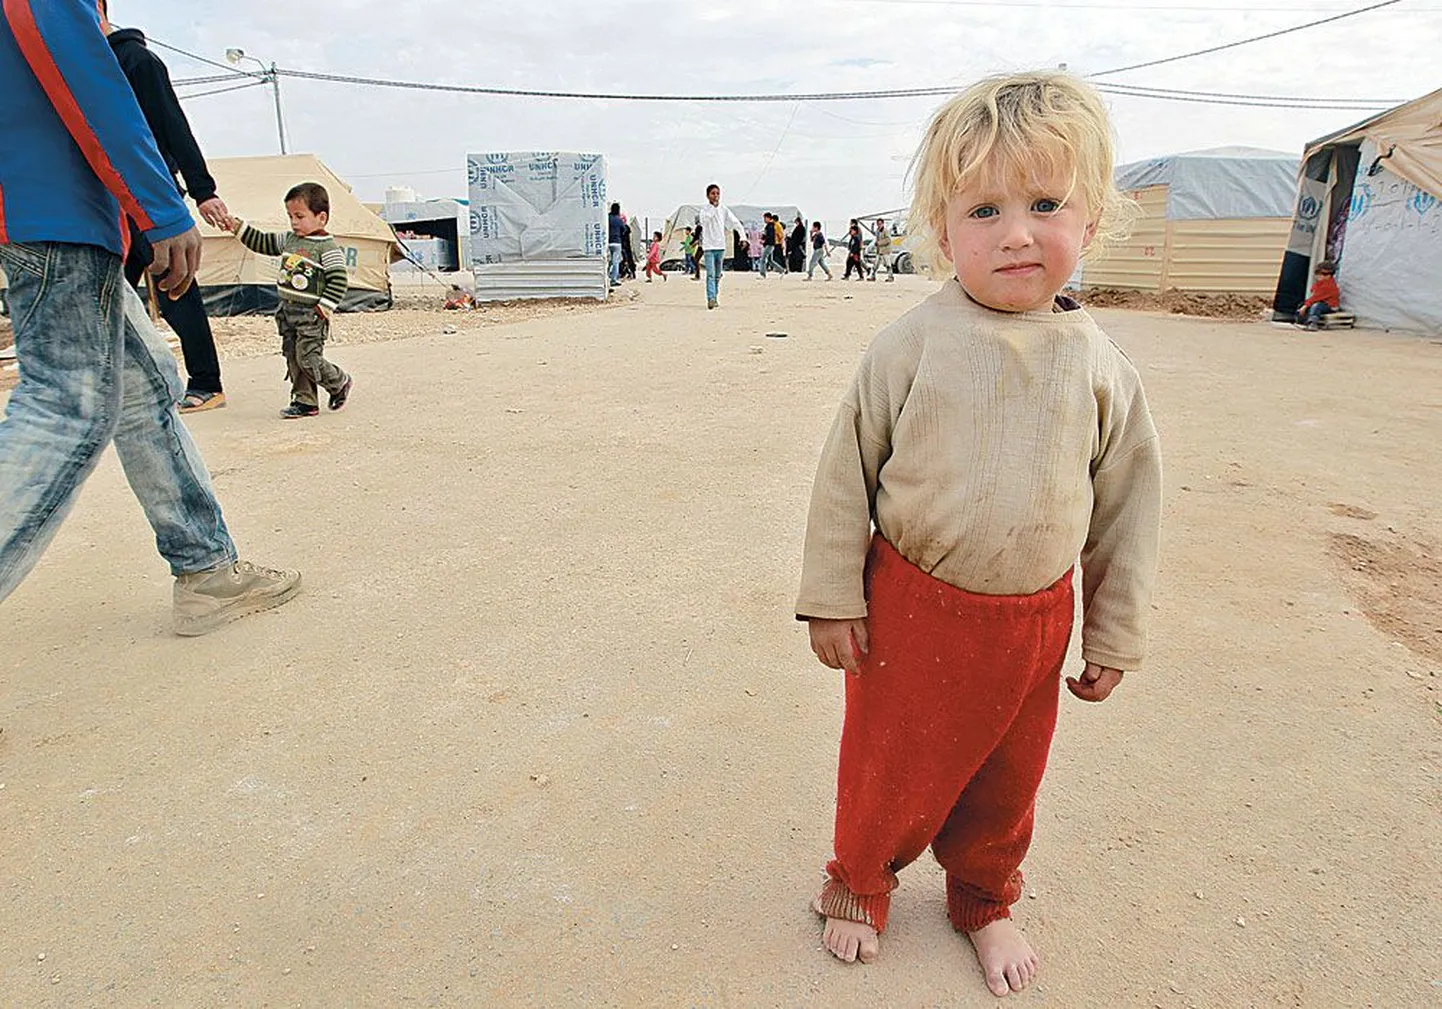 Типичный беженец наших дней, сирийский мальчик из лагеря беженцев Аль-Заатри в Иордании близ города Мафрак. Хотя эти люди нуждаются в защите относительно близко от Евросоюза, большинство из сотен тысяч сирийцев, бежавших от войны, остаются в палаточных лагерях в Турции и Иордании недалеко от сирийской границы.